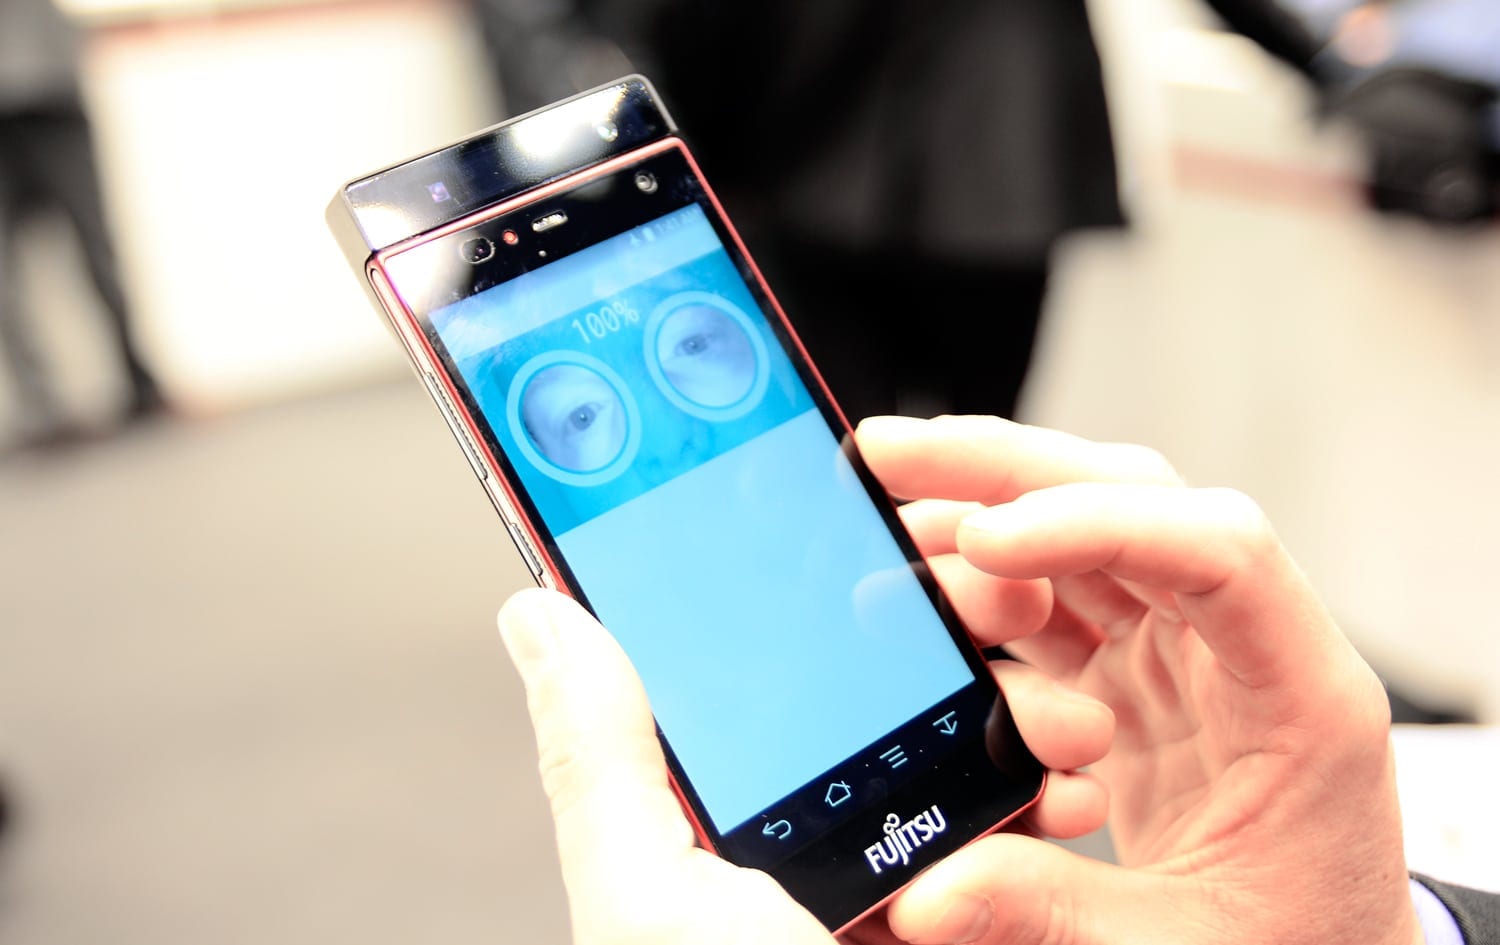 Fujitsu lansează primul smartphone cu scanarea irisului. Mai multe detalii am aflat la #MWC2015